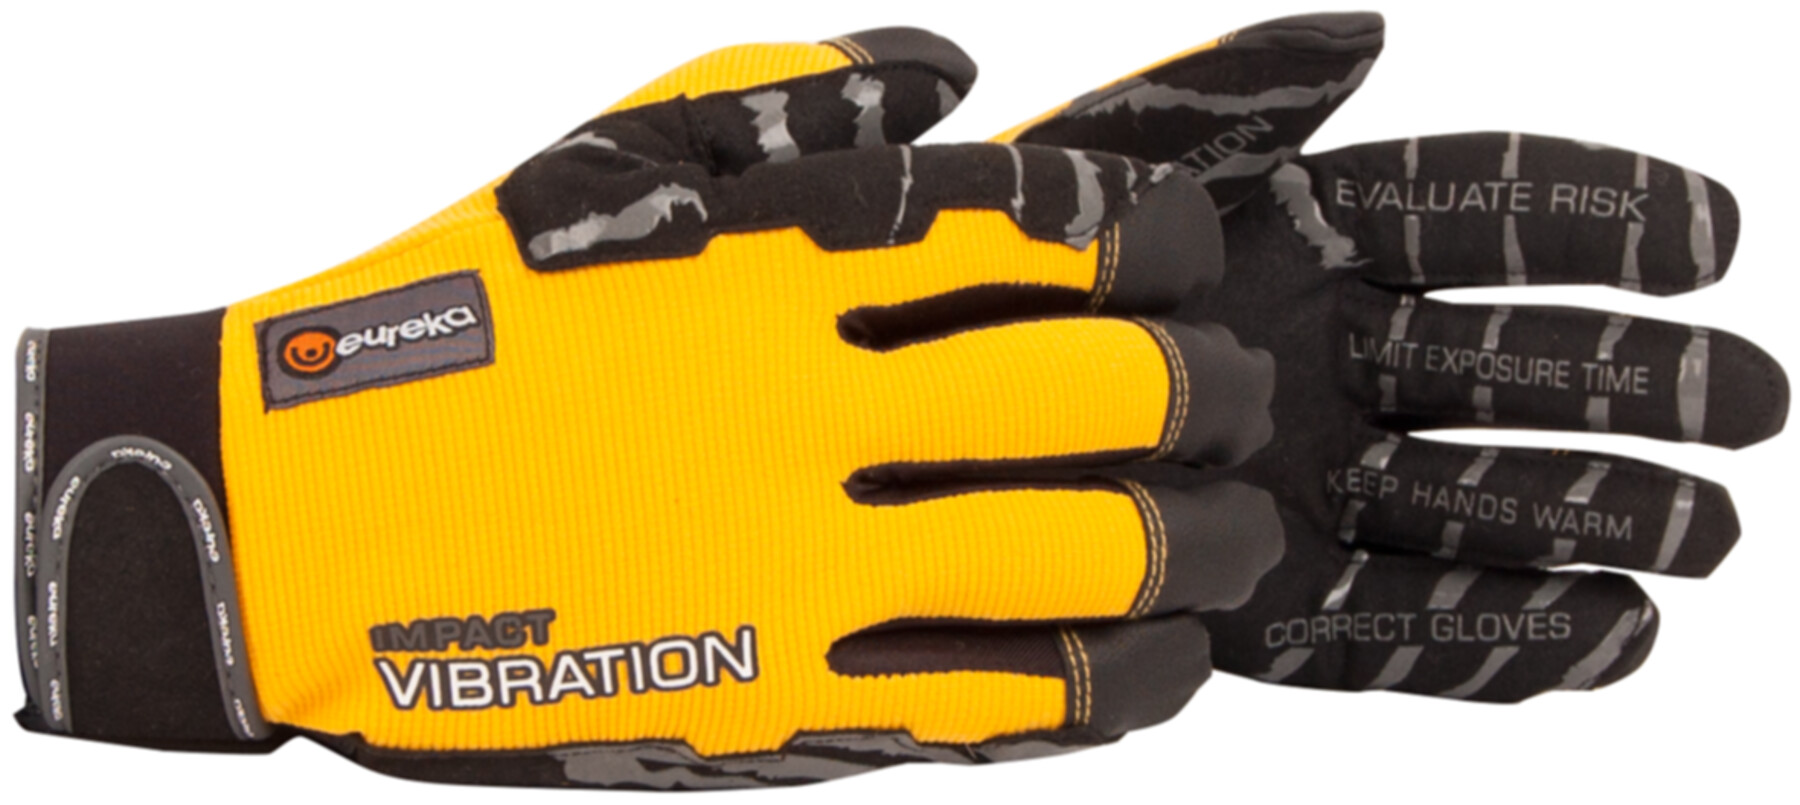 SIP Protection Anti-Vibration Forsthandschuhe mit mechanischer Resistenz  EN388 3 1 3 2 Handschuhe für Kettensägenarbeiten